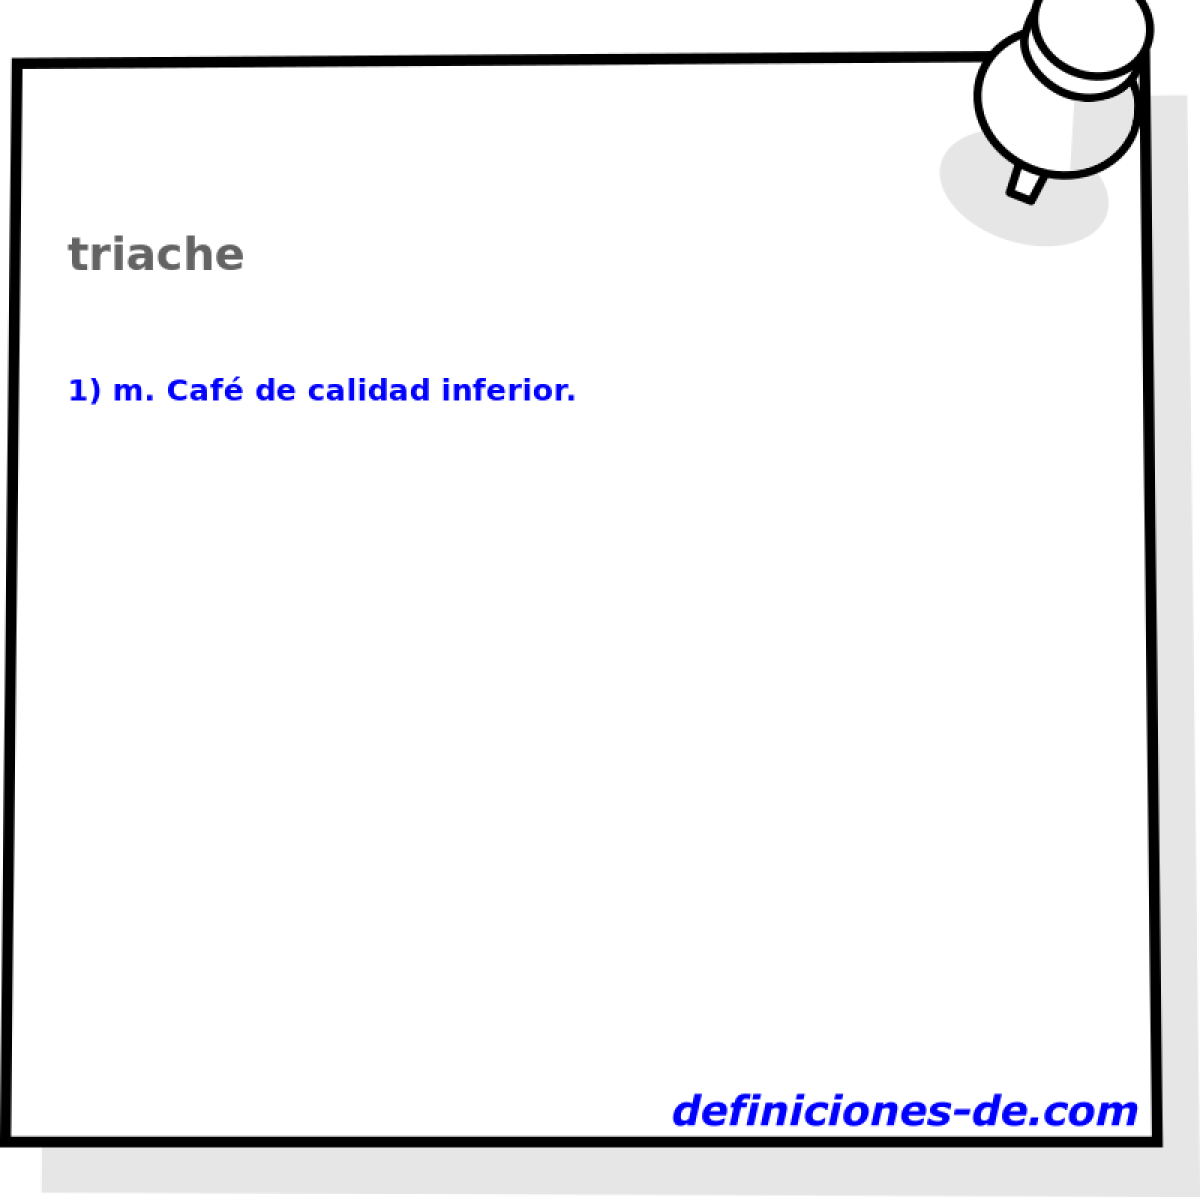 triache 